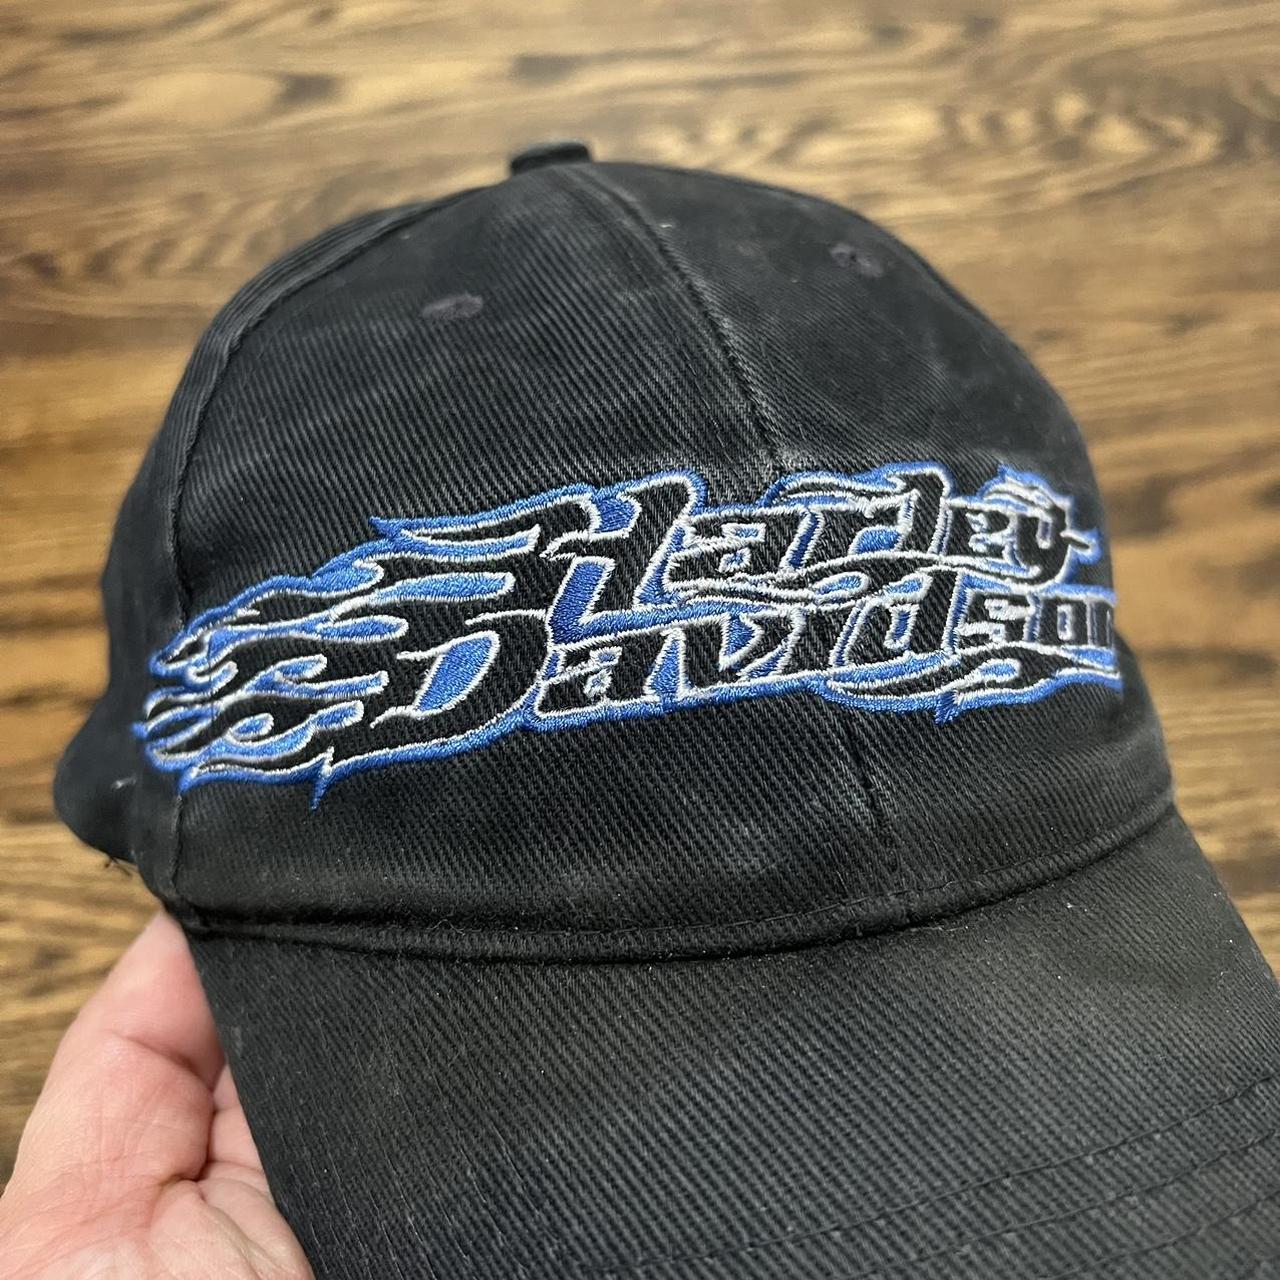 Harley Davidson Men's Black and Blue Hat (2)